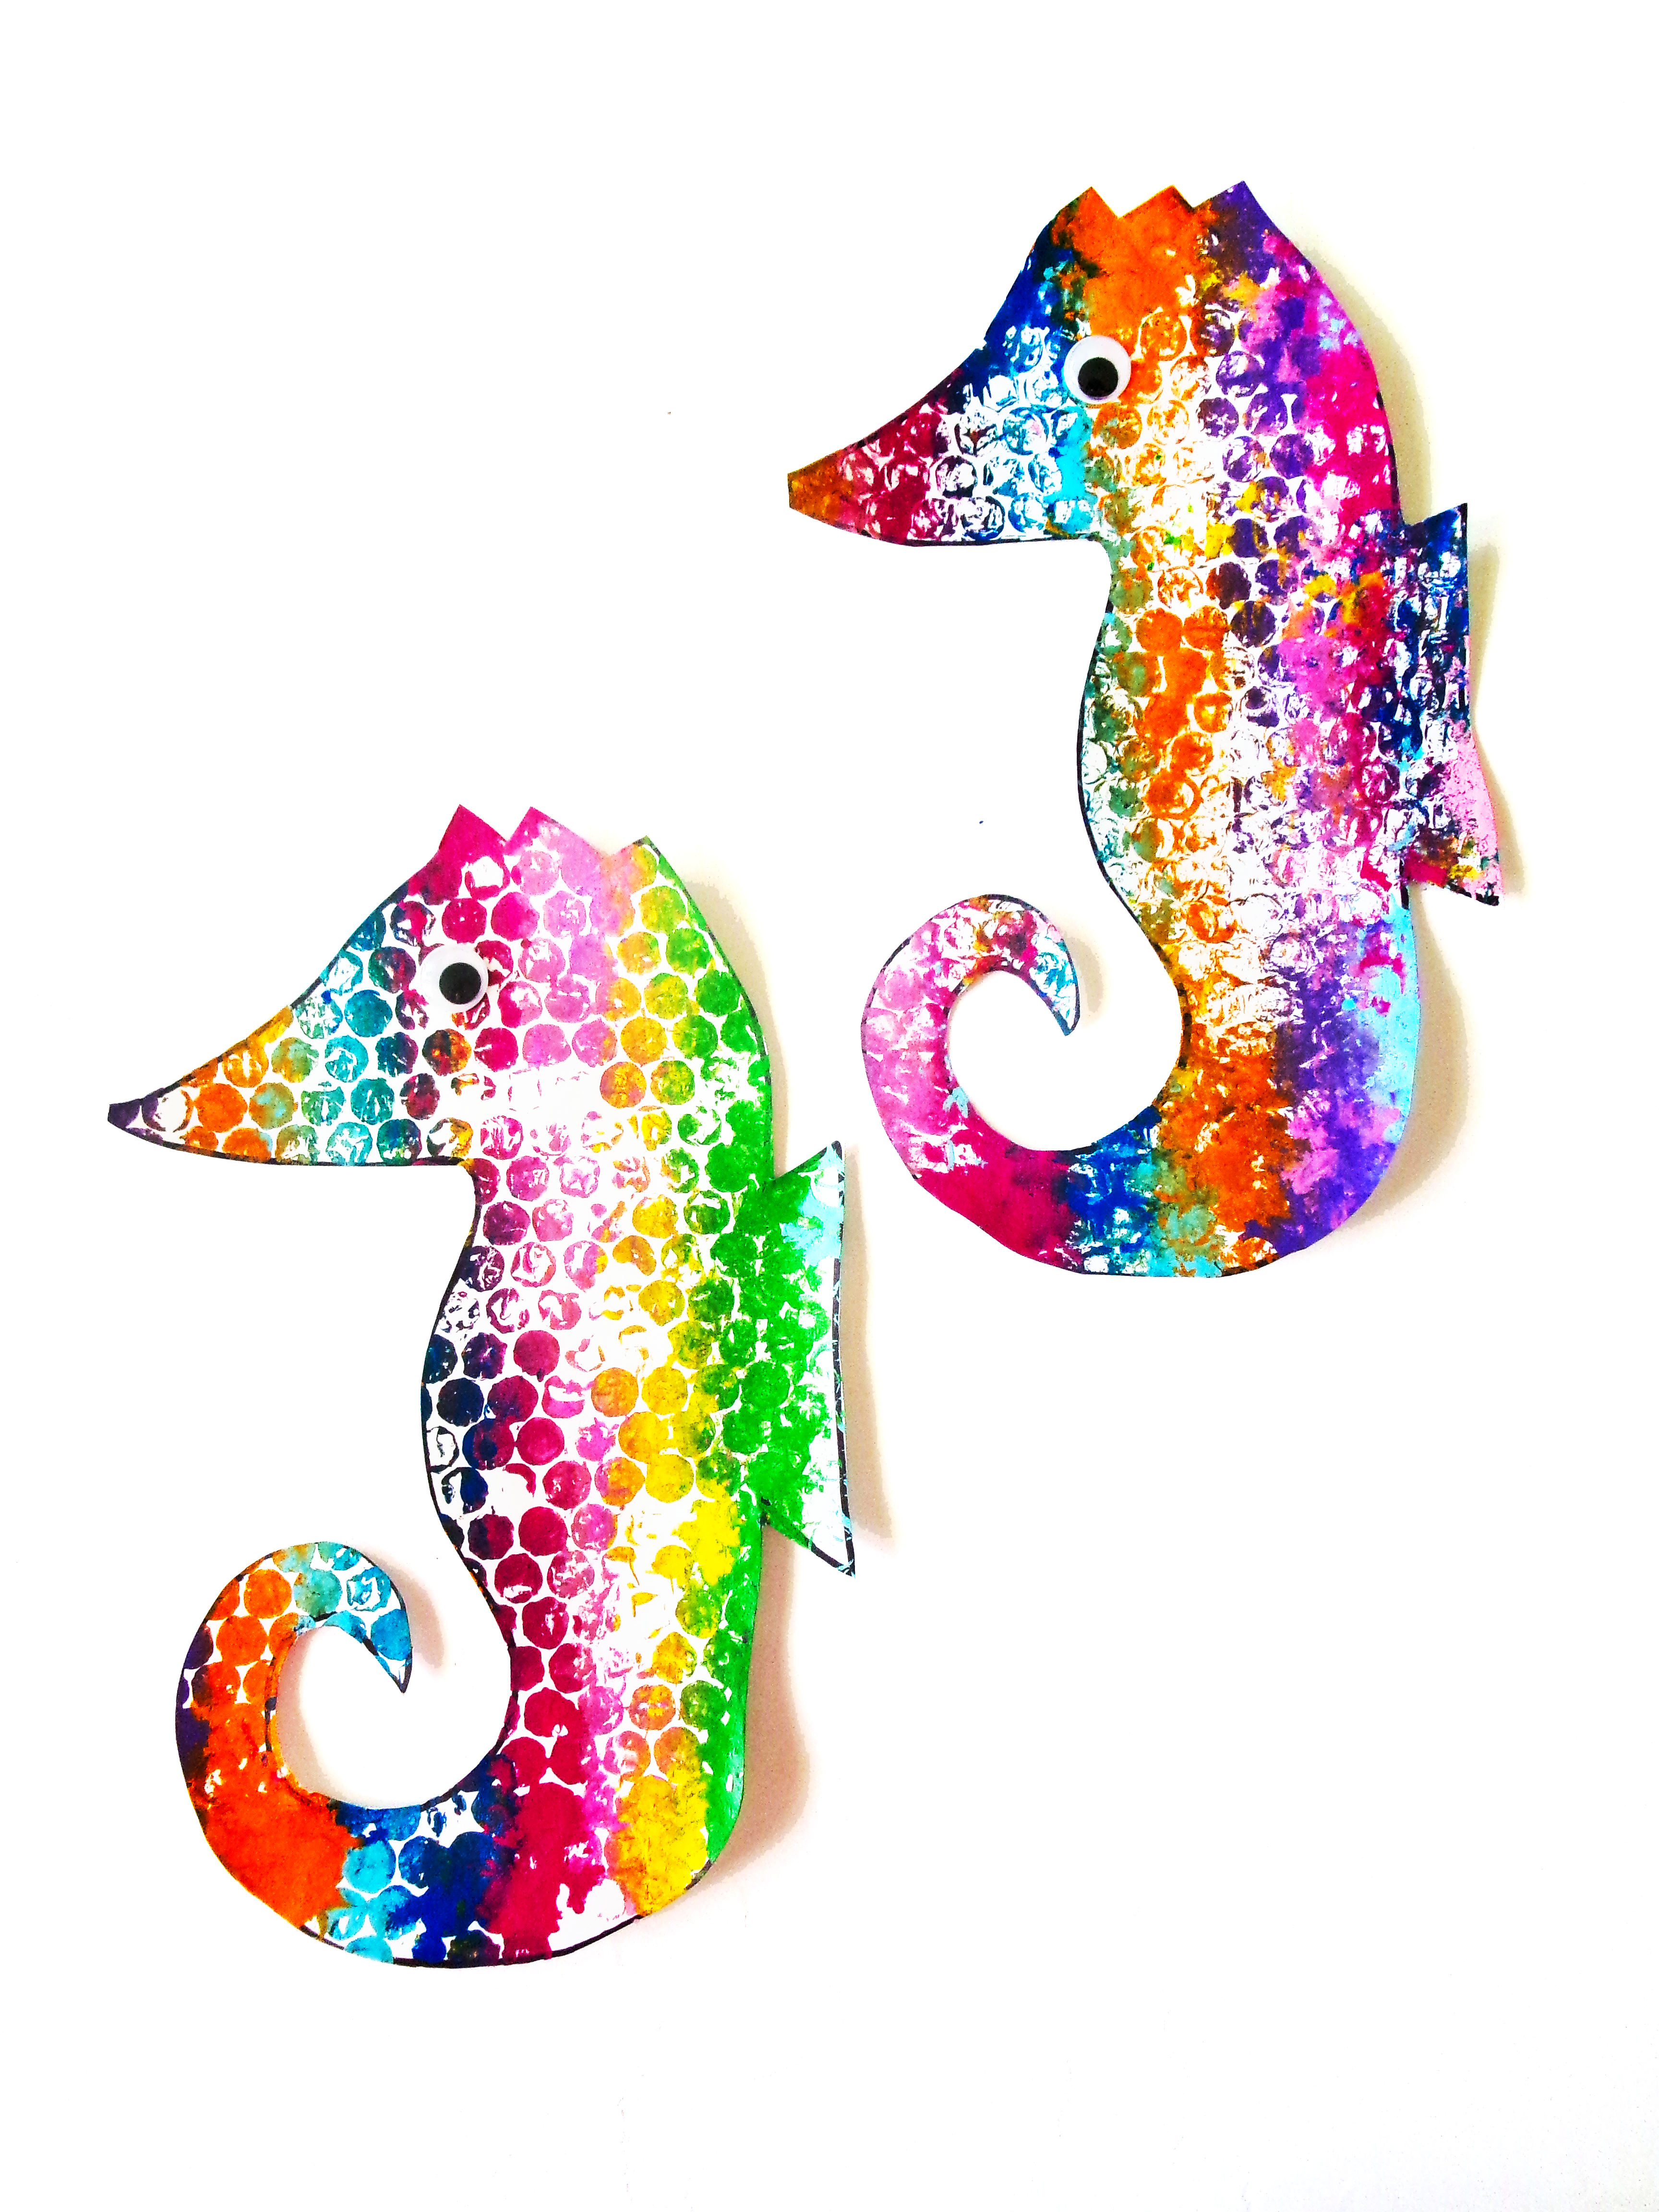 Bubble Wrap Painting – Make a Sea Horse